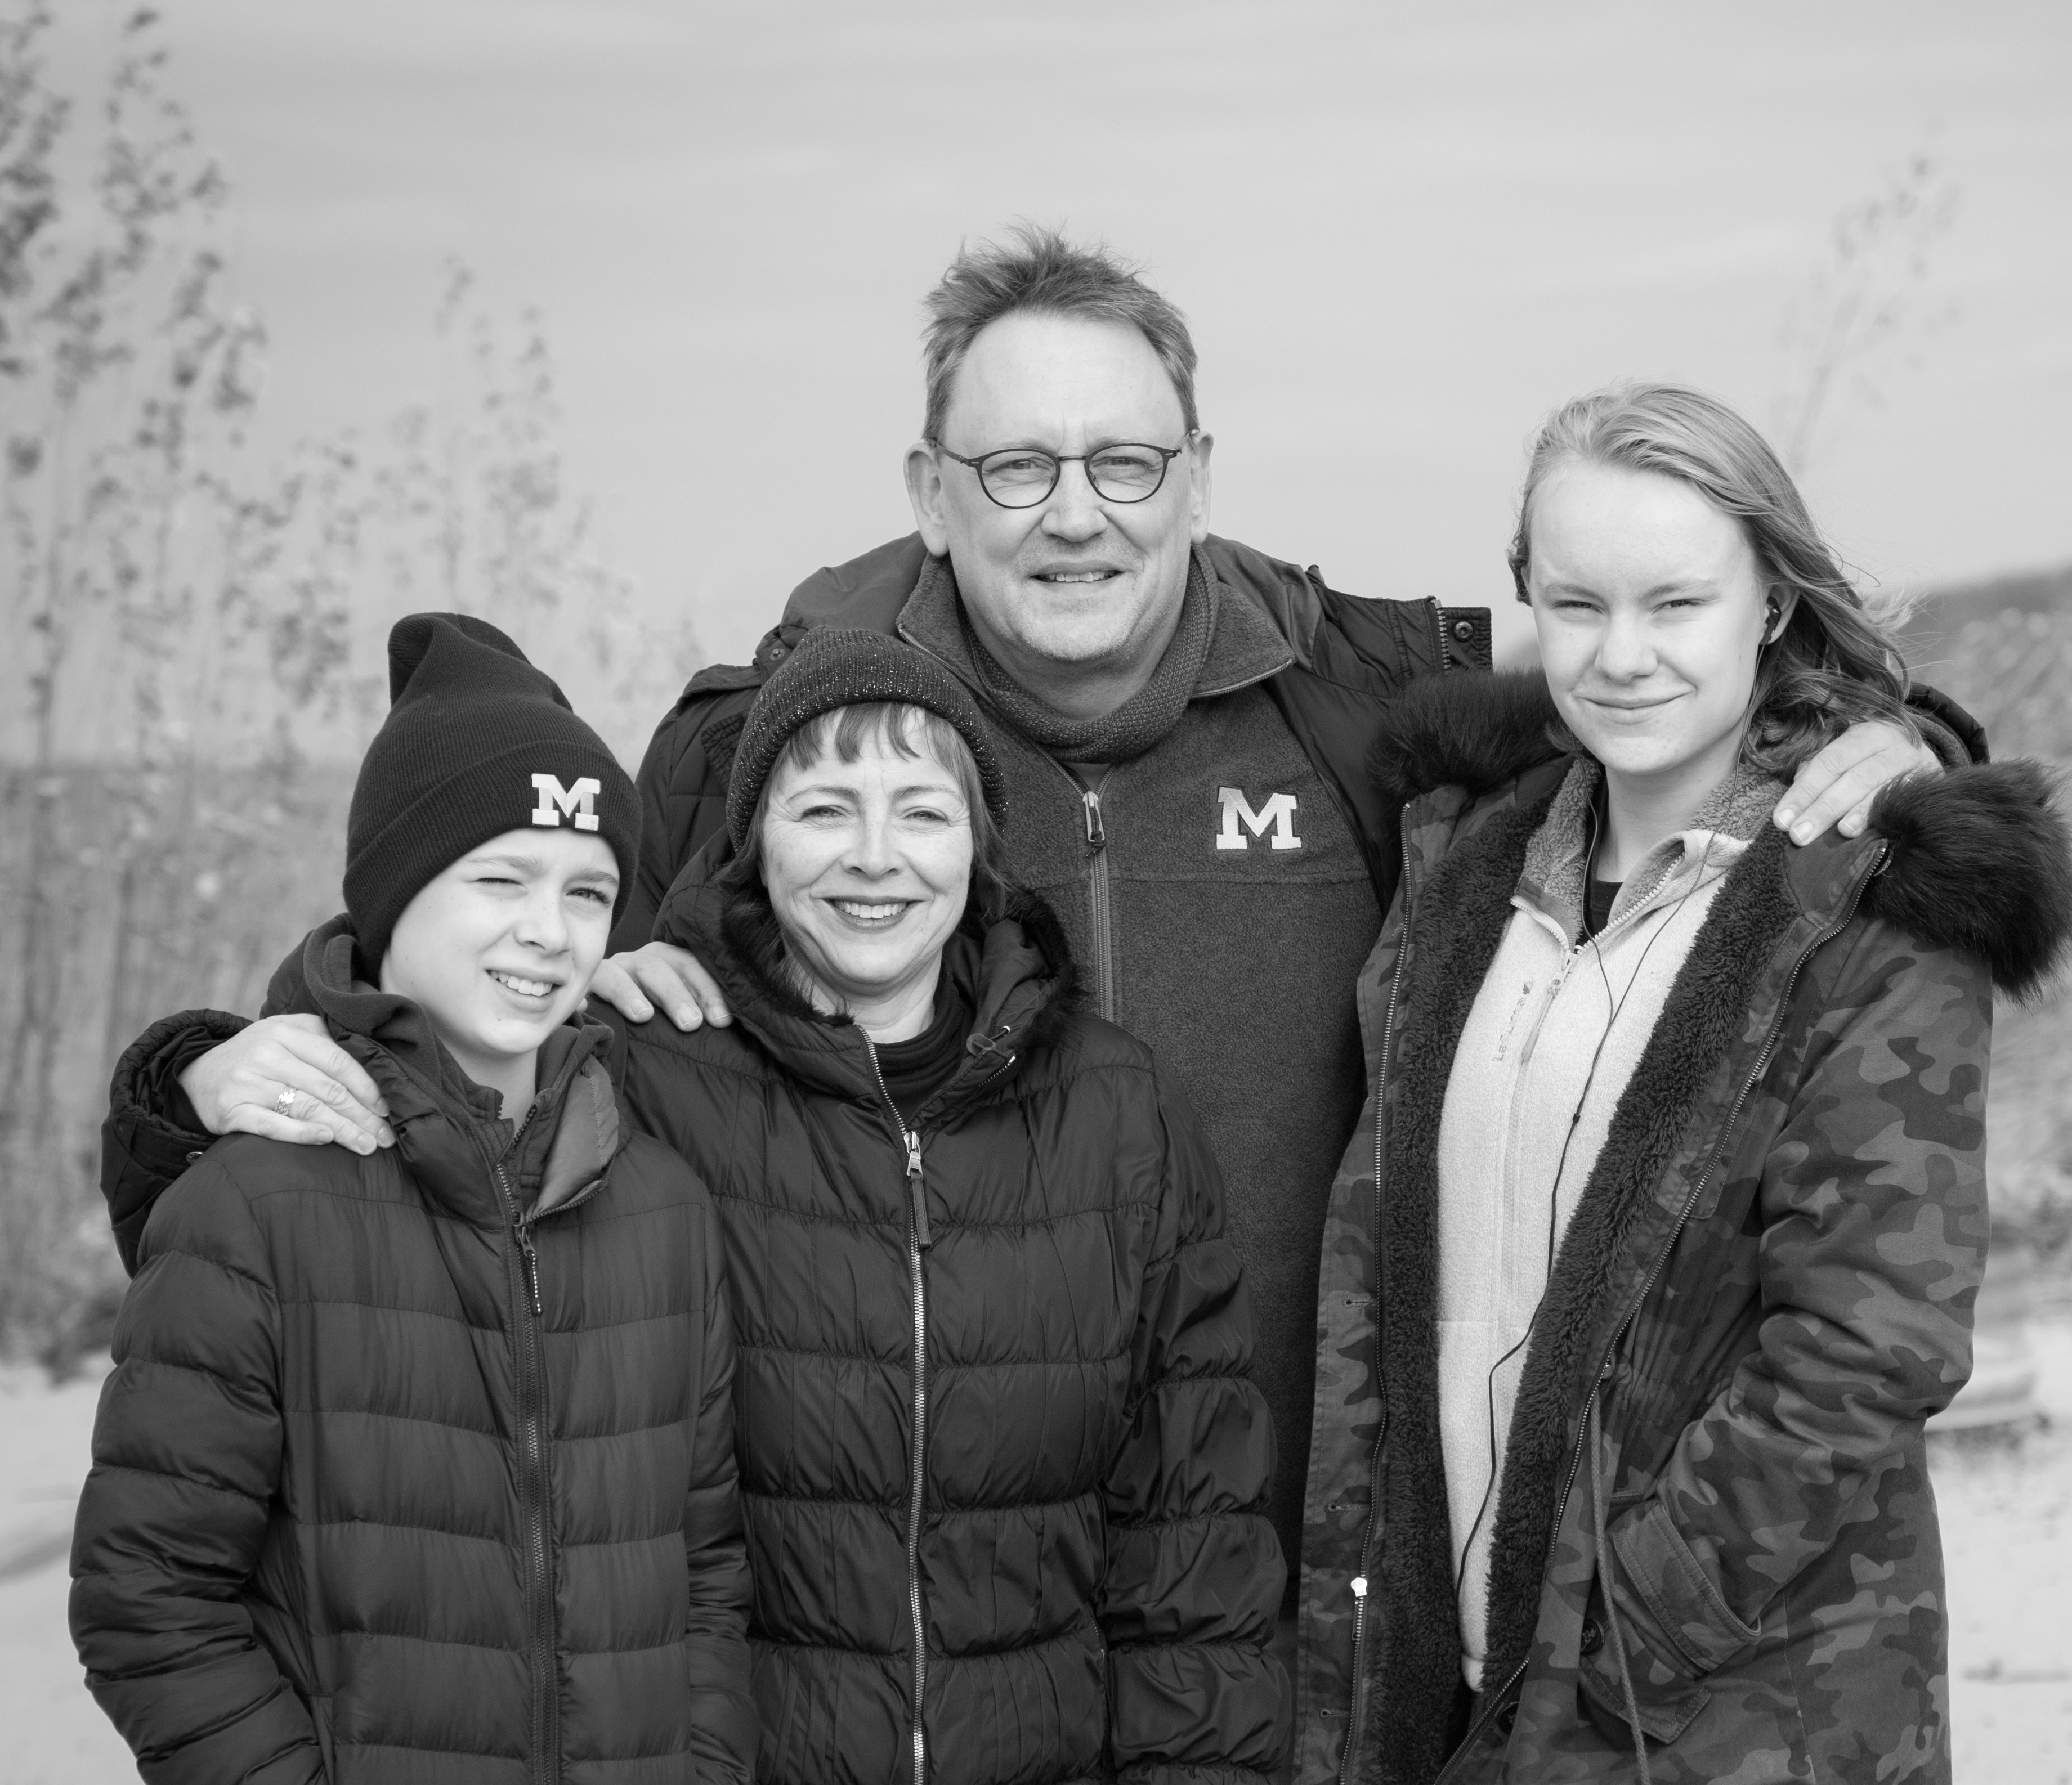 Trui Moerkerke met familie